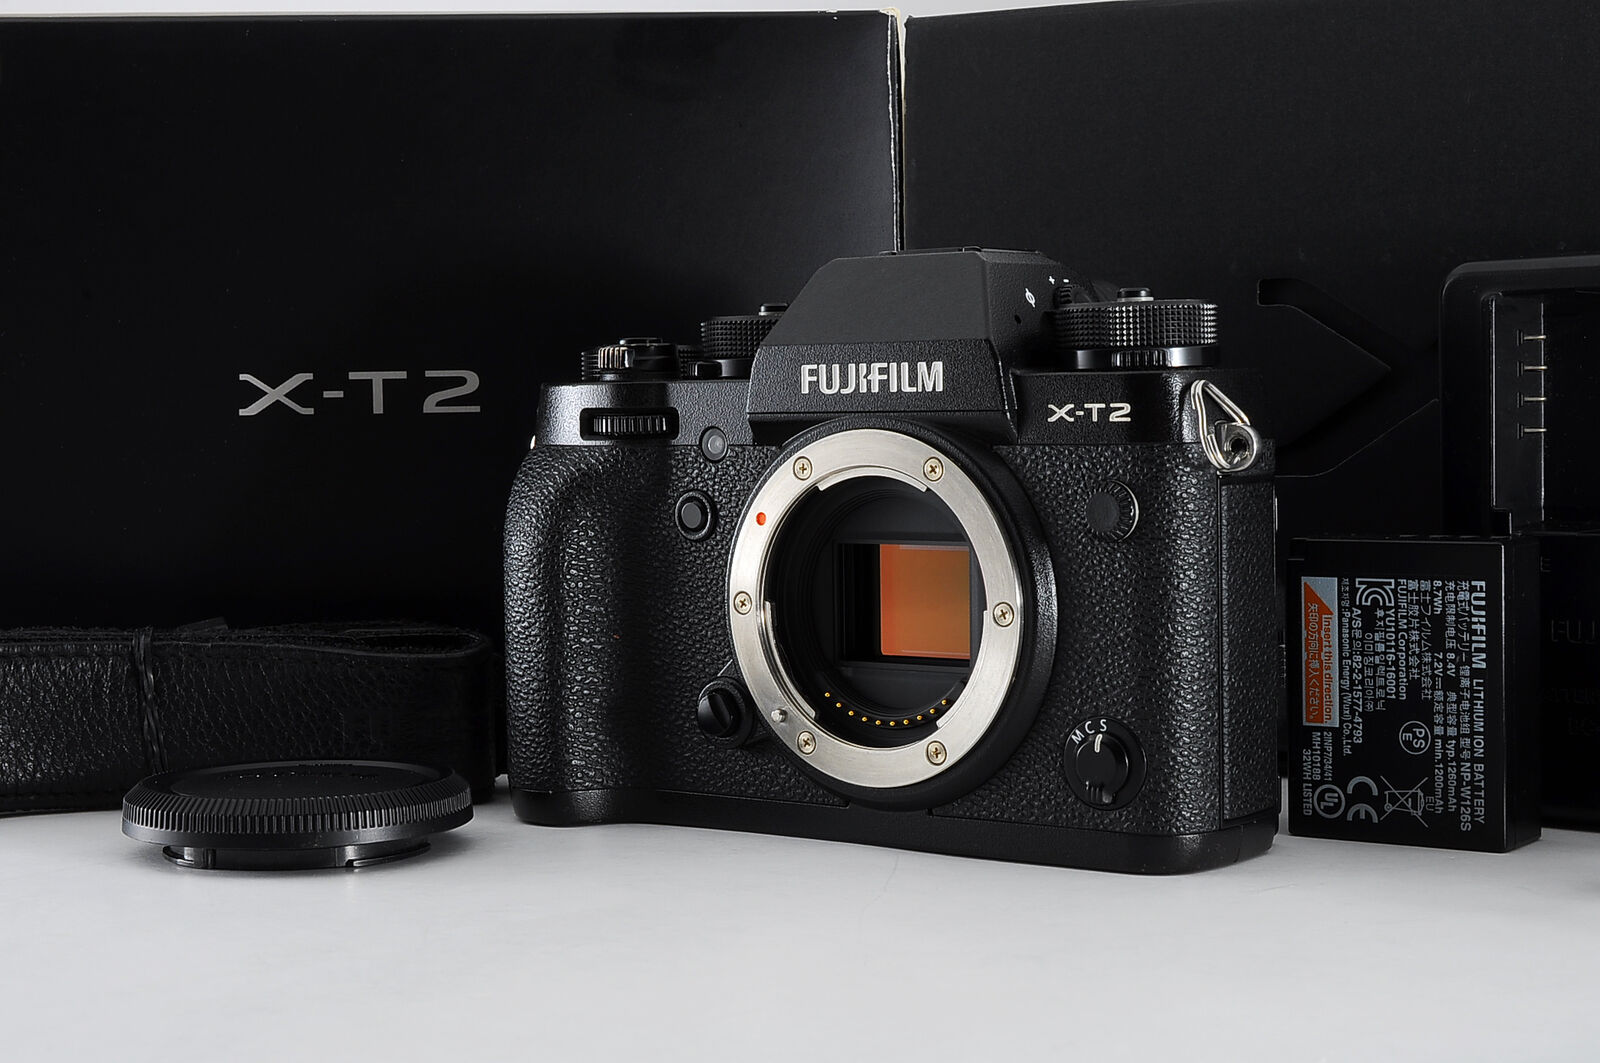 [Near MINT 7609 shots] Fujifilm Fuji X-T2 XT2 Black 24.3MP Mirrorless From JAPAN